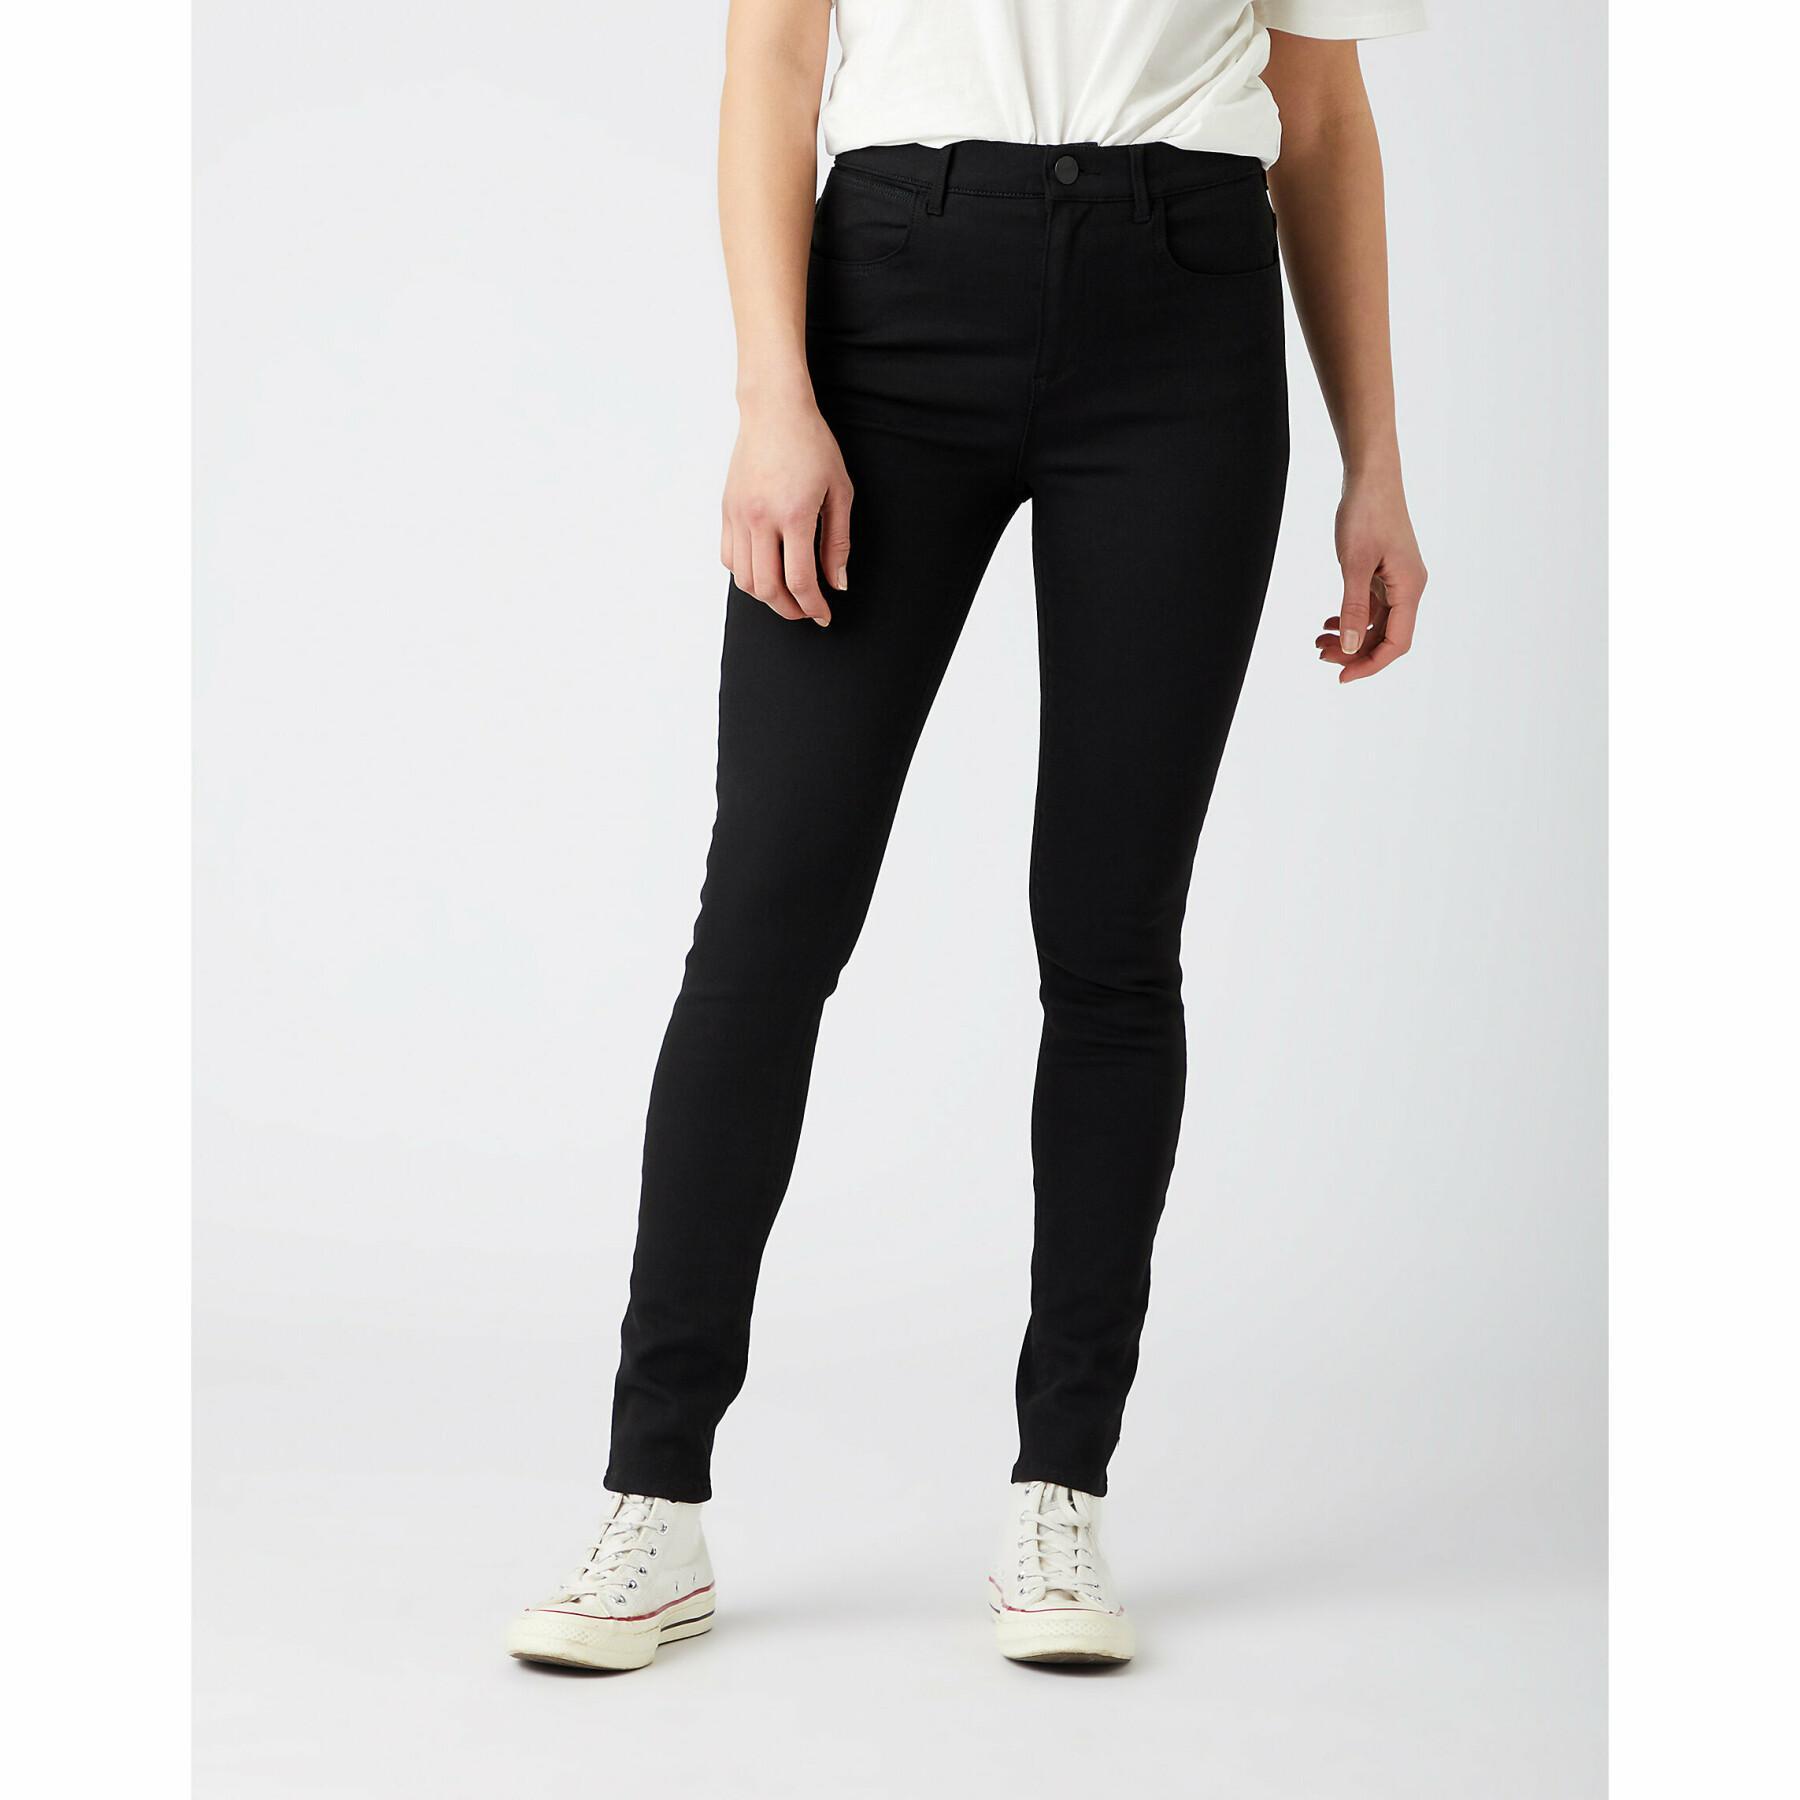 Women's skinny jeans Wrangler in Future Black